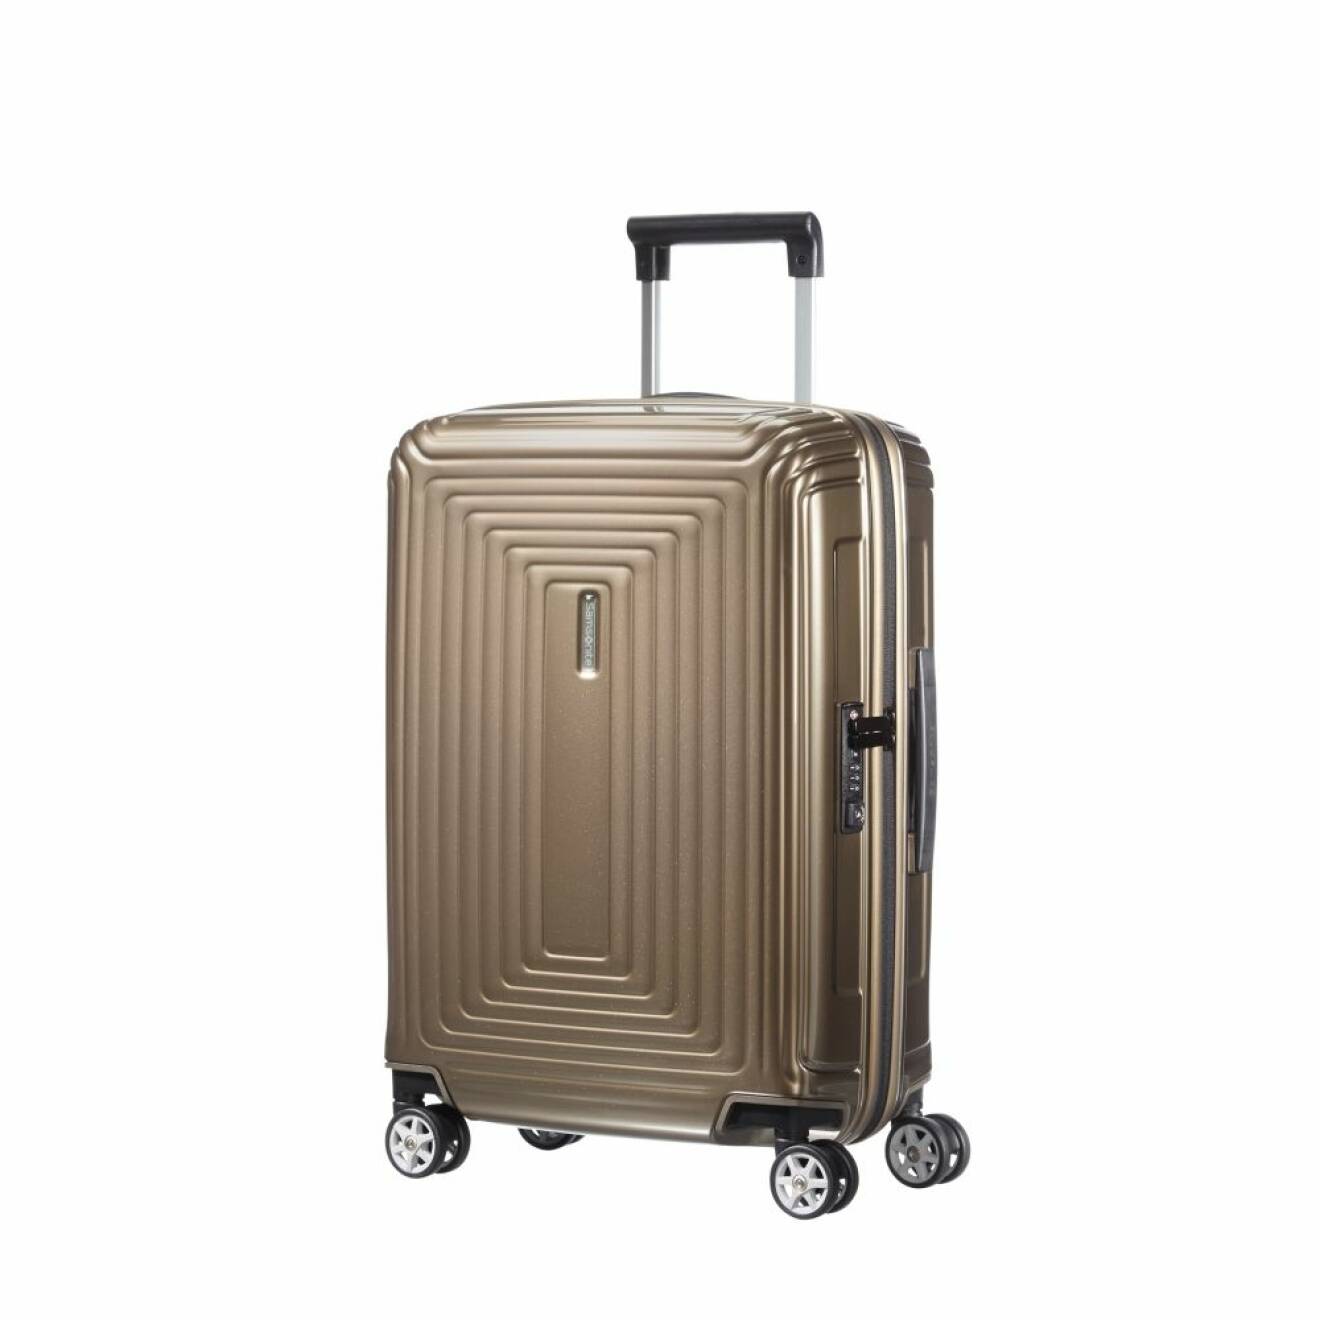 Lättviktig och hållbar resväska i en fin ljusbrun nyans från Samsonite.